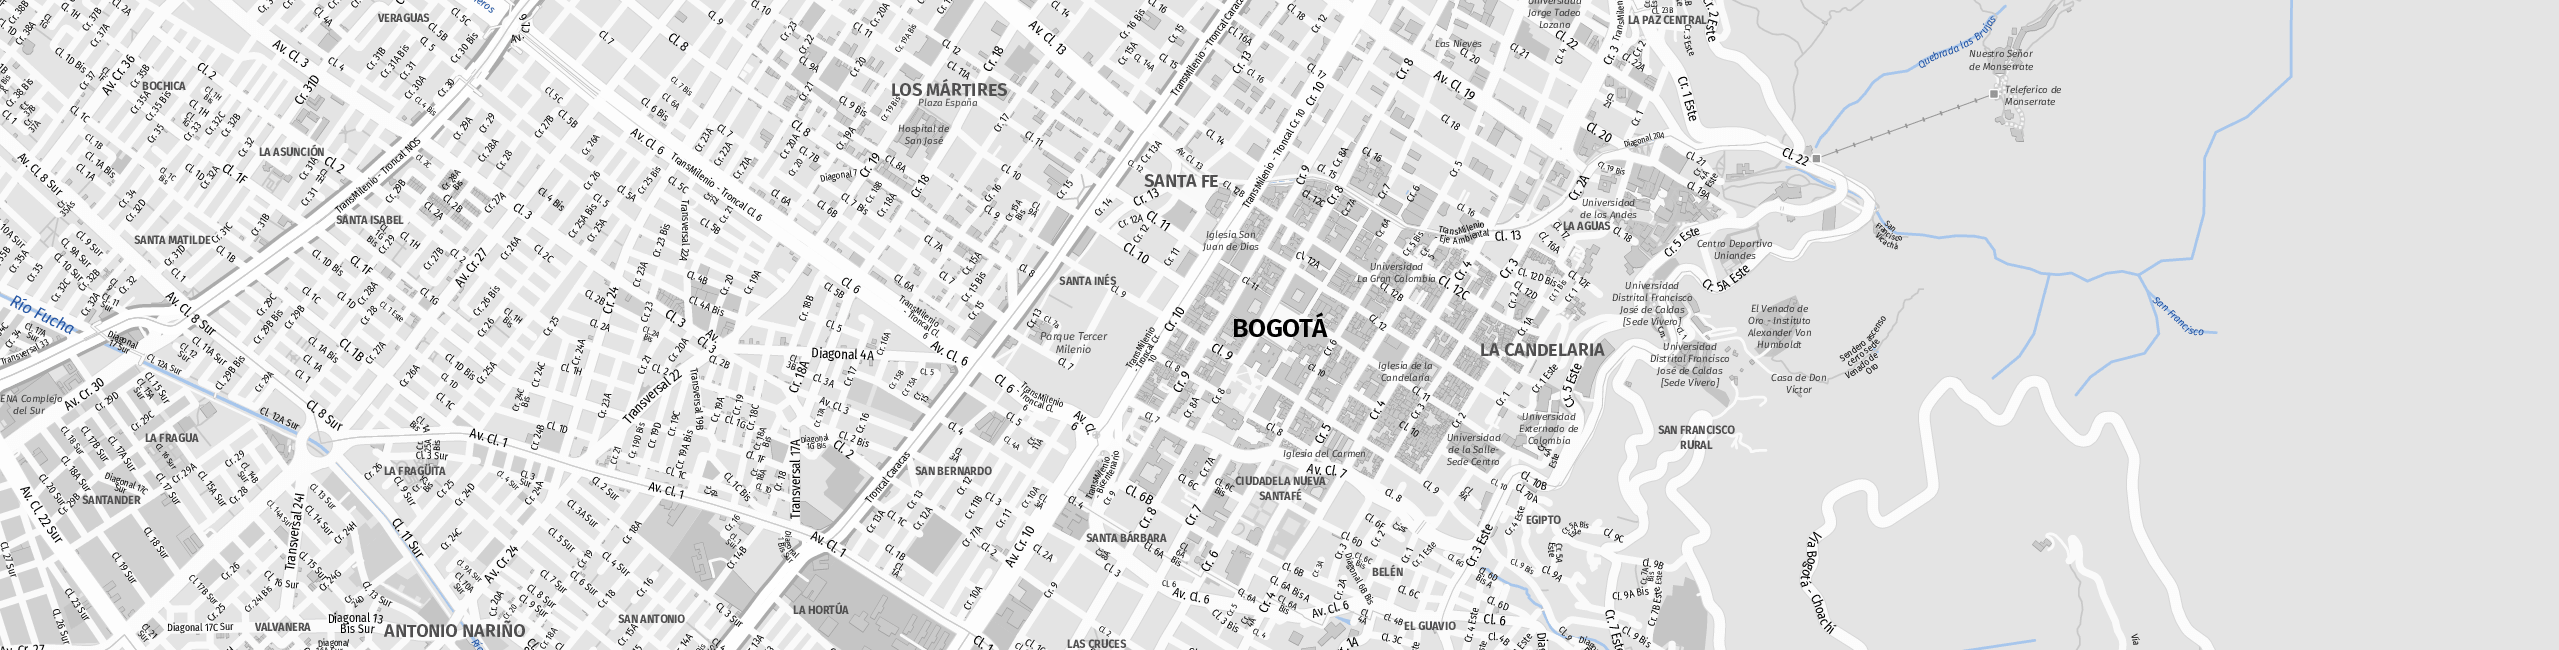 Stadtplan Bogota zum Downloaden.